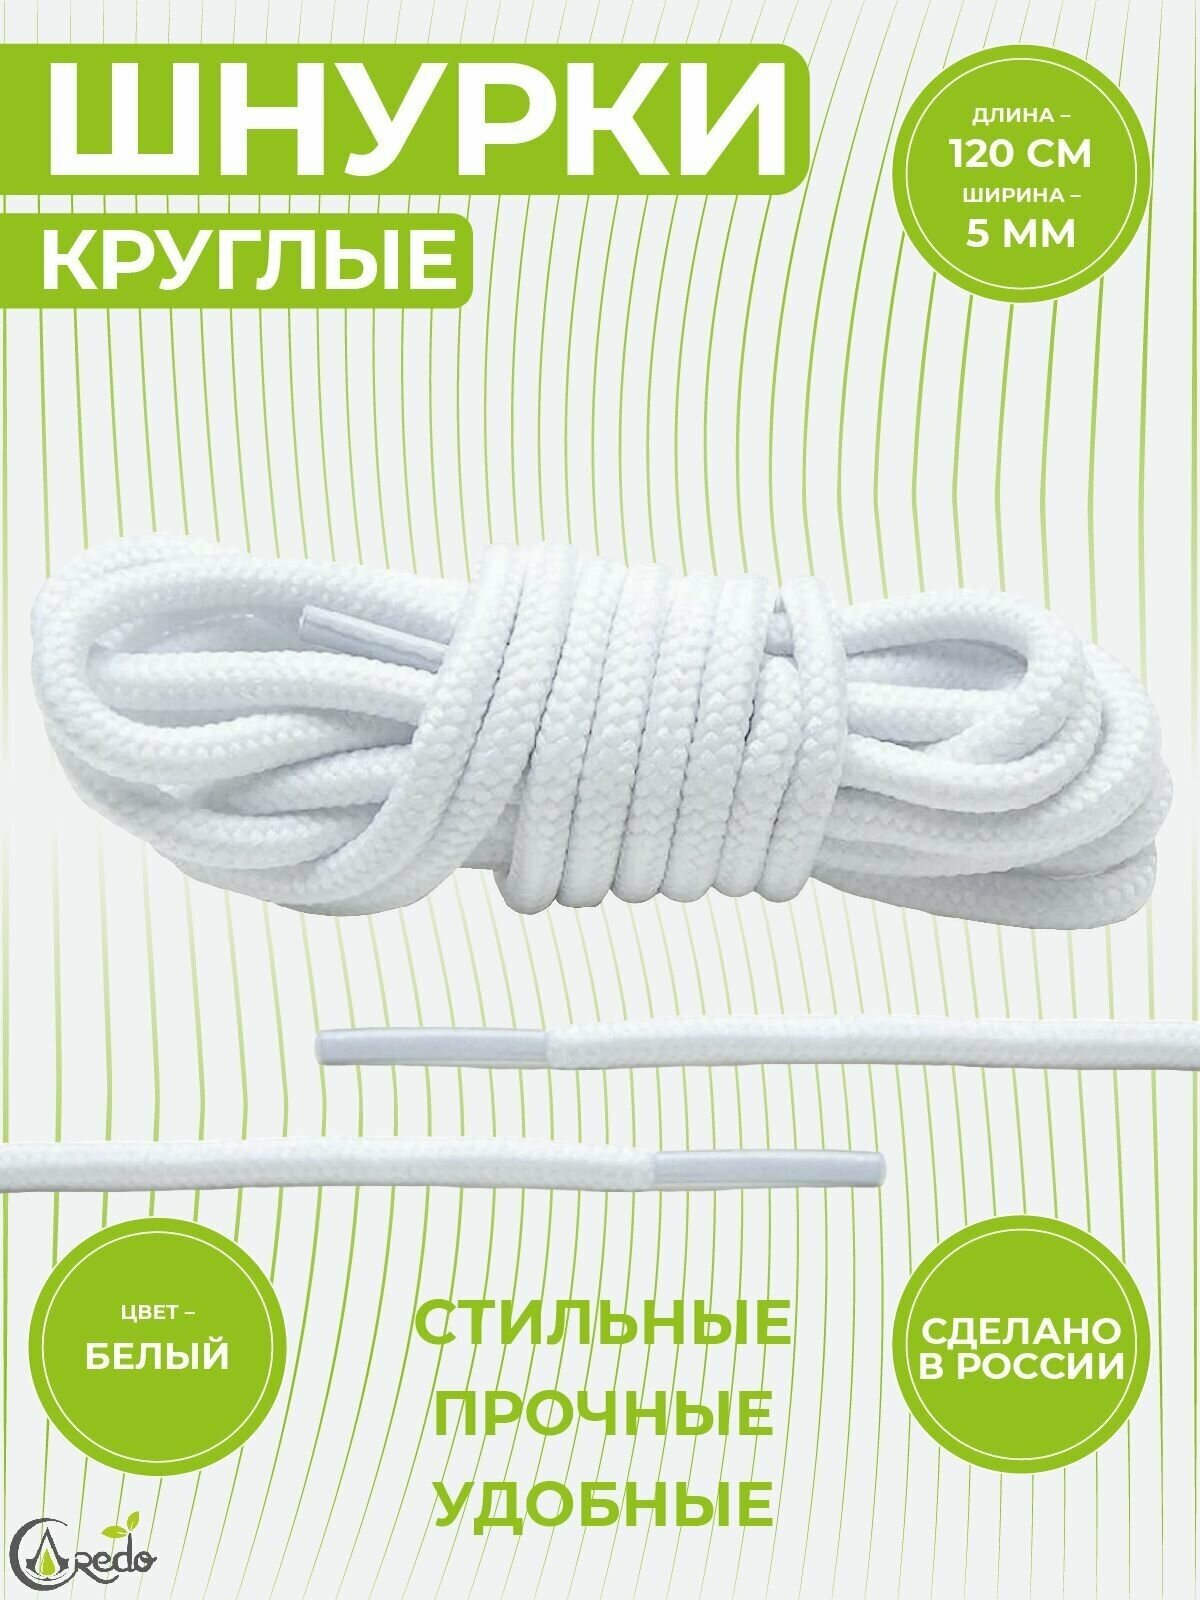 Шнурки для берцев и другой обуви, длина 120 сантиметров, диаметр 5 мм. Сделаны в России. белые